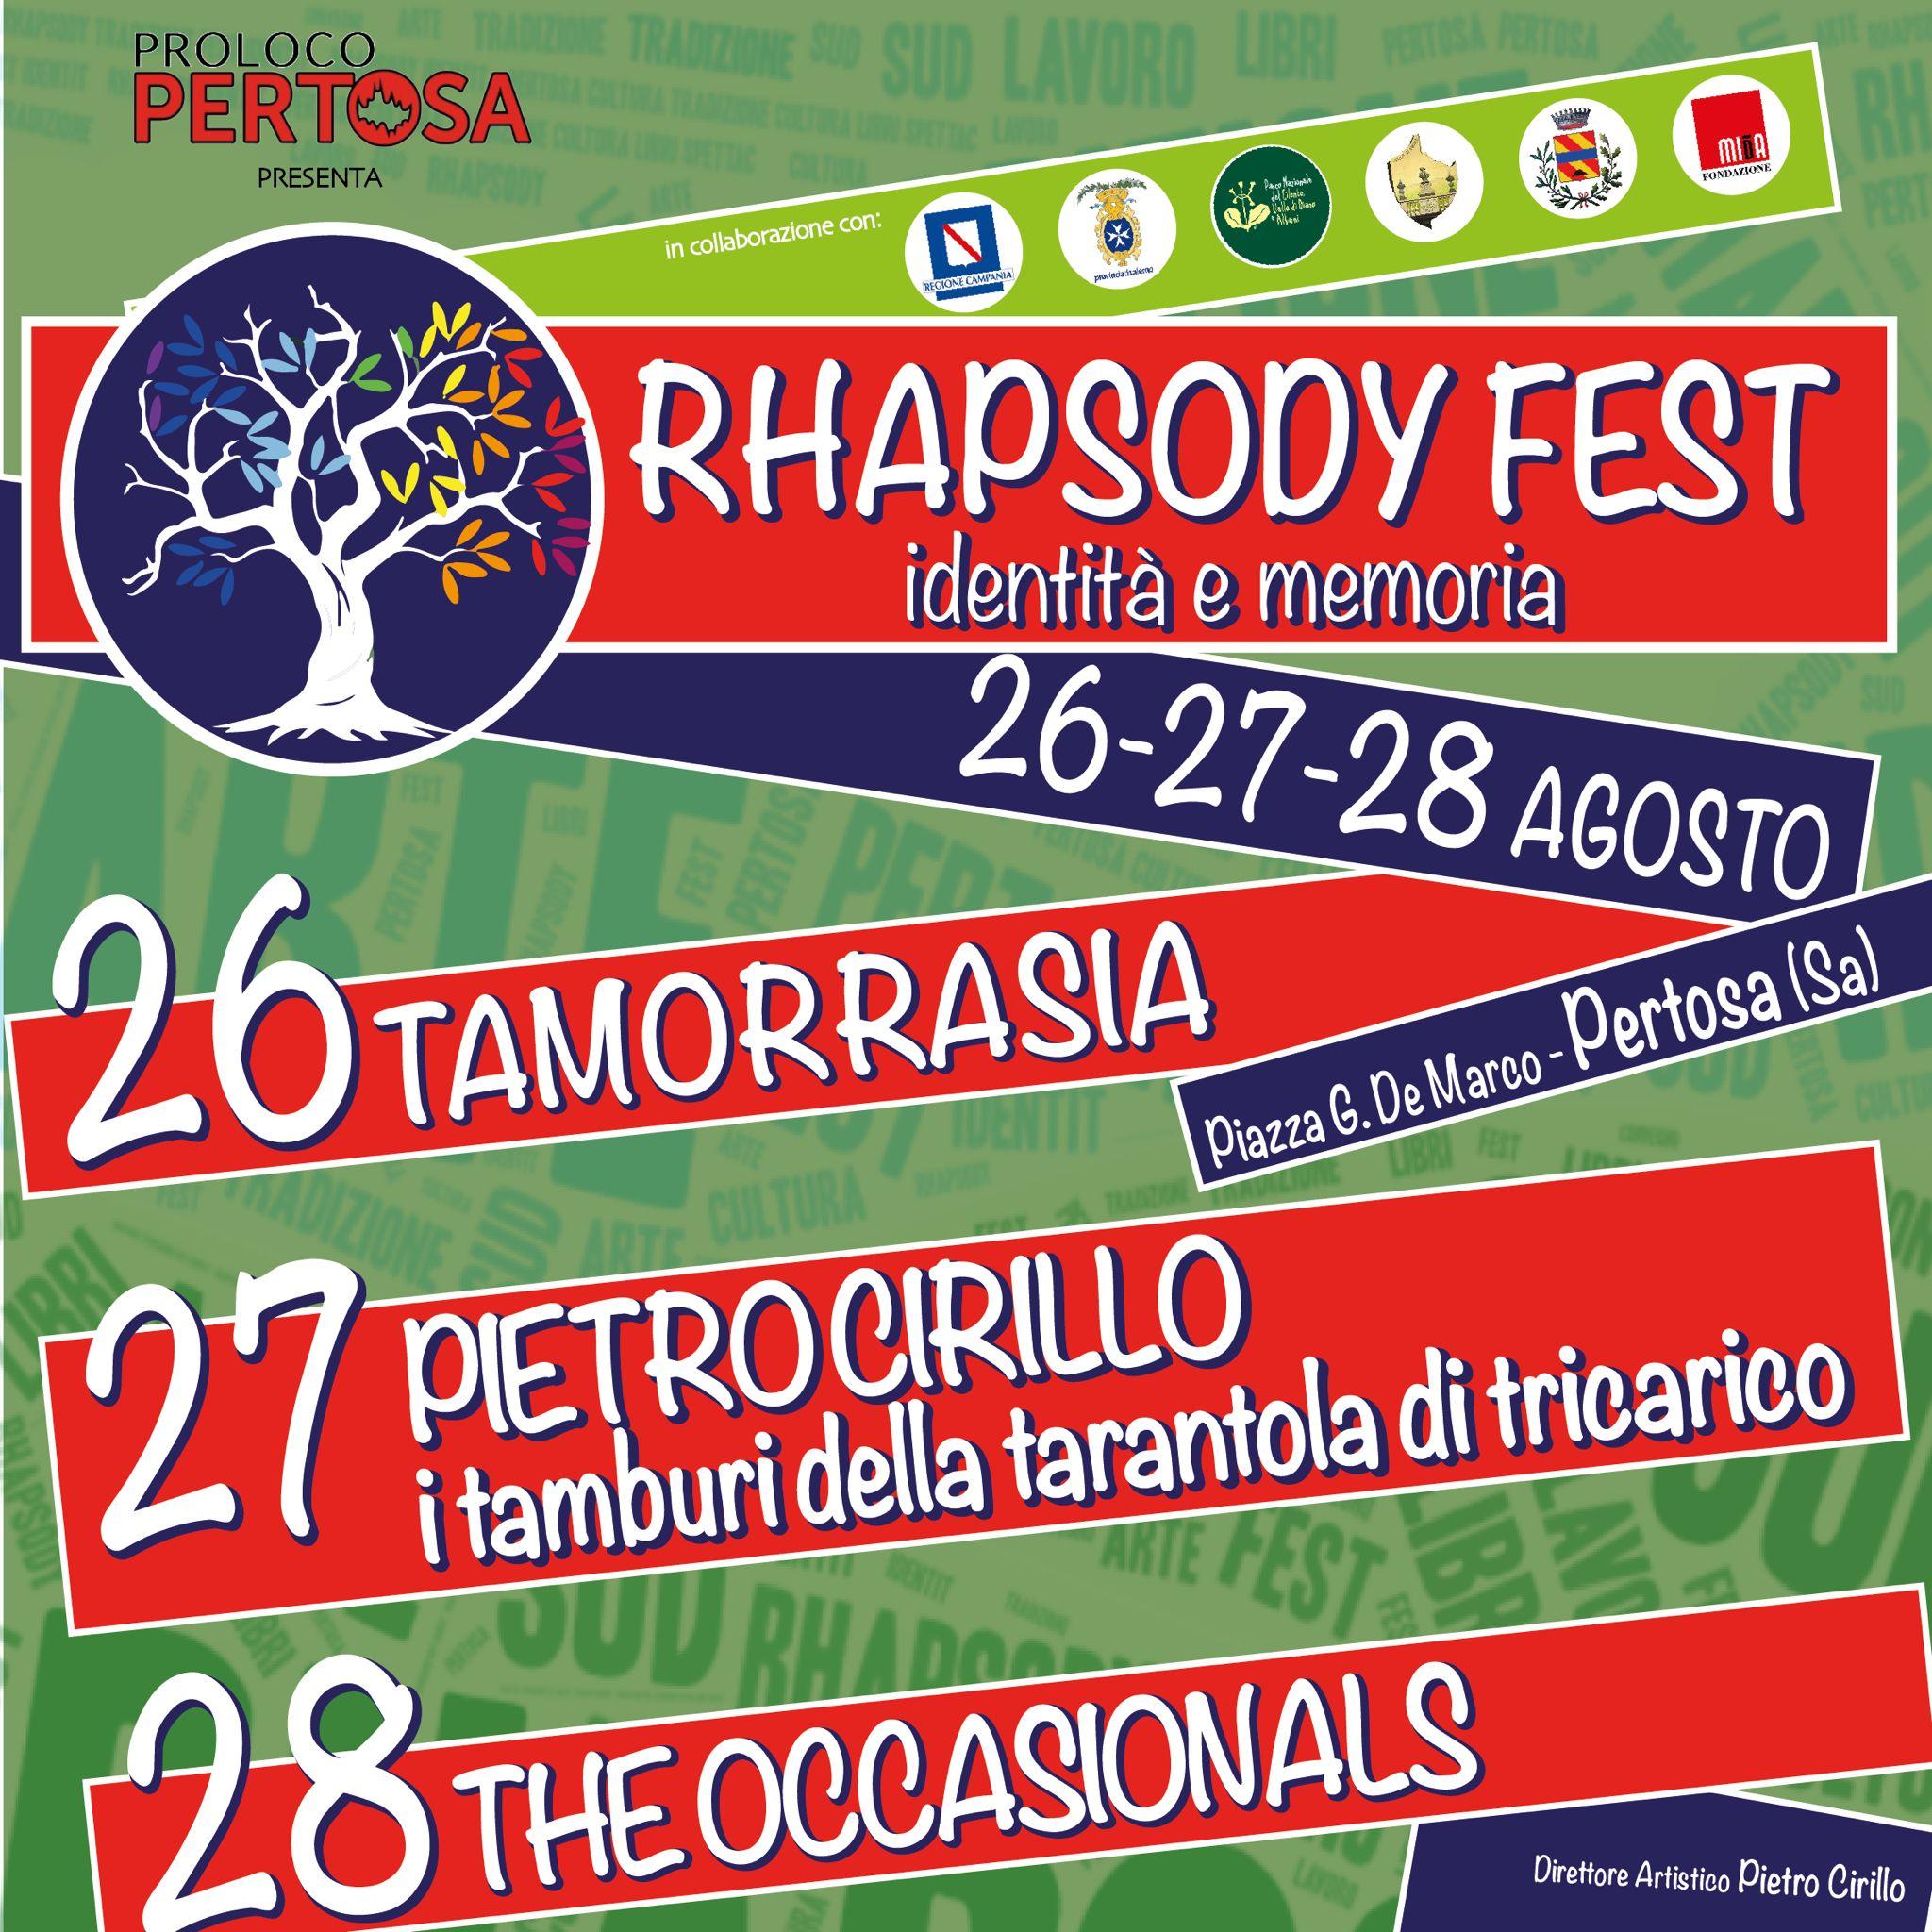 Pertosa, arriva «Rhapsody Fest»: 3 giorni di musica, arte e cibo tra memoria e identità